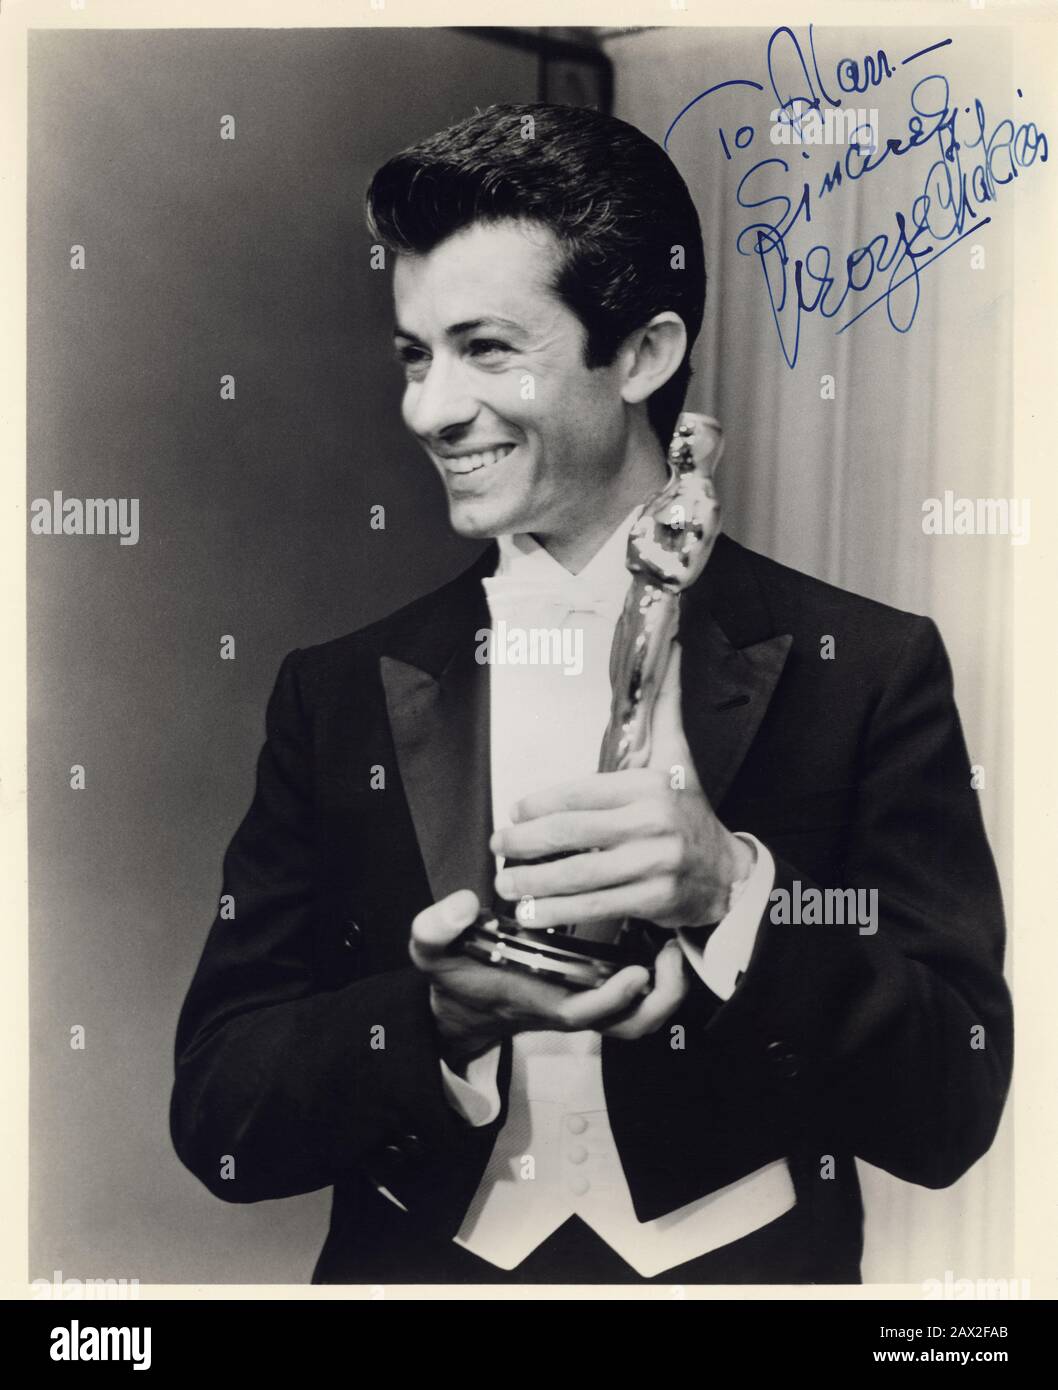 1962, LOS ANGELES, USA: Der Filmschauspieler und Tänzer GEORGE Chakiris ( geboren am 16. September 1934 in Norwood, Ohio) ist OSCAR-PREISTRÄGER wie Der Beste Nebendarsteller für West Side Story (* 1961) von Jerome Robbins und Robert Wise. - KINO - Lächeln - sorriso - rauchender Oberschenkel - Krawatte - Krawatte - Cravatta - papillon - Oscarverleihung - Cerimonia premiazione - Premio OSCAR - Staatuetta - Staatuette - - -- Archivio GBB Stockfoto